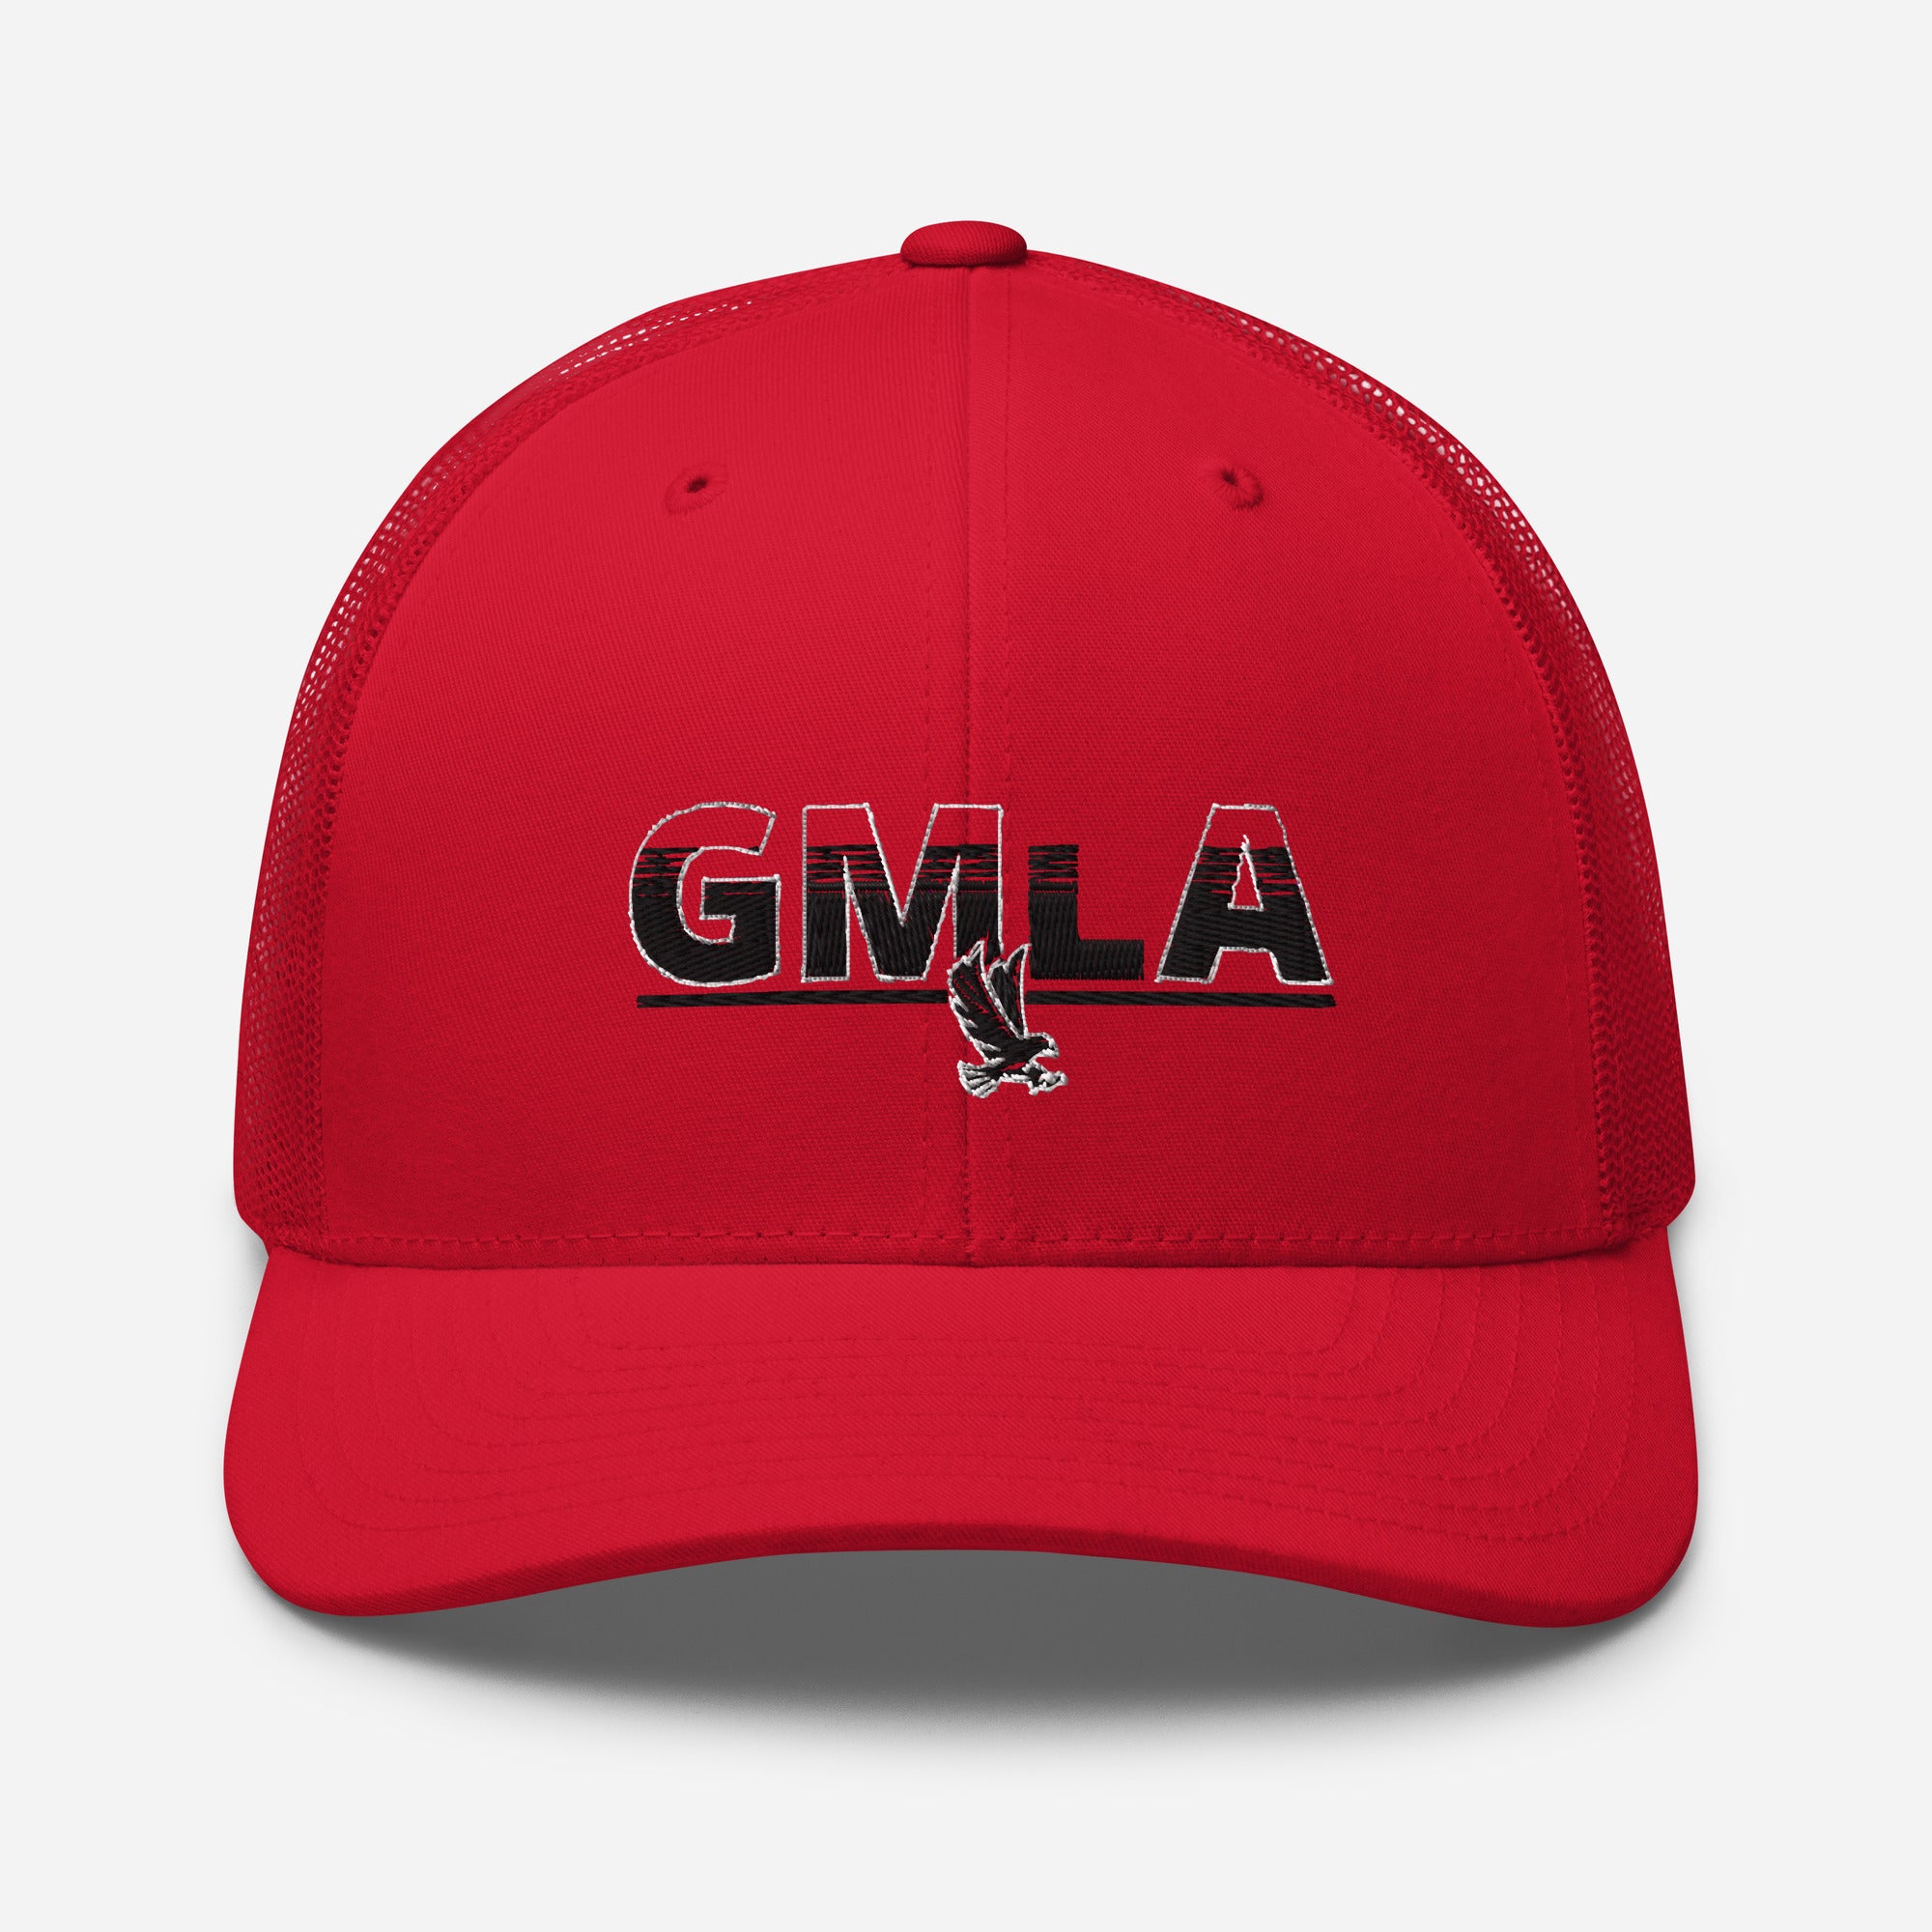 GMLA Trucker Cap